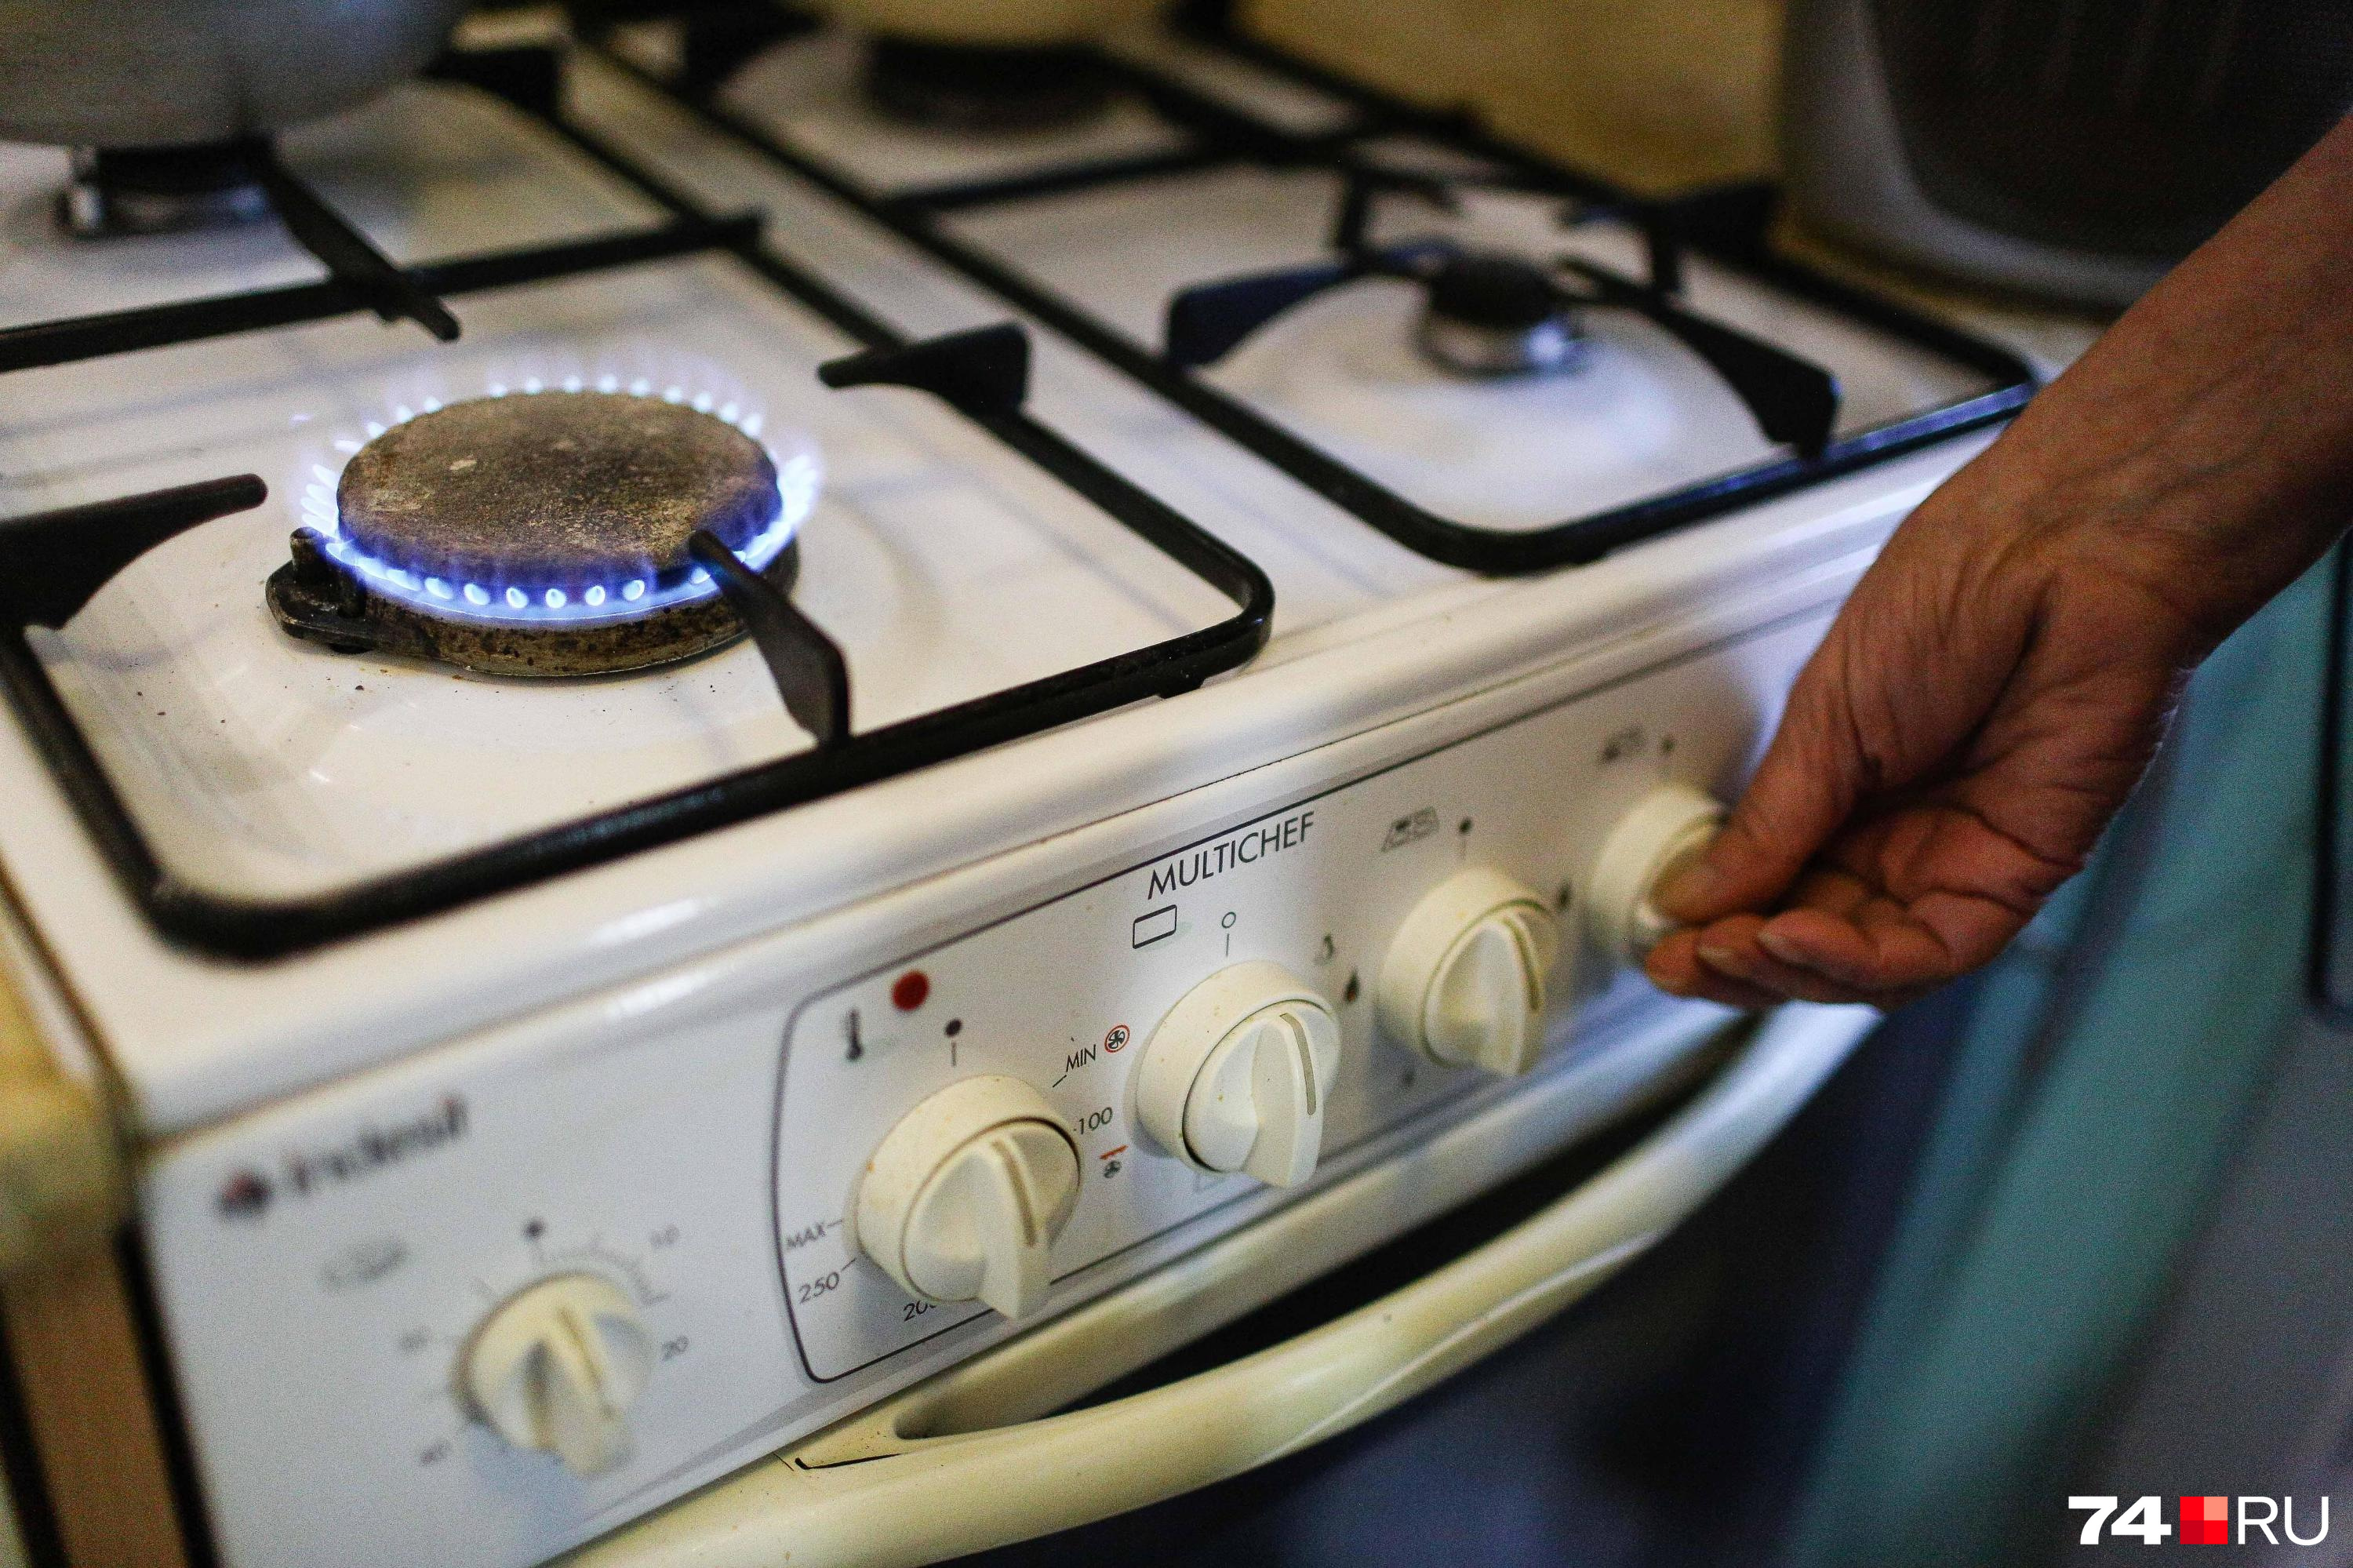 Сотни жалоб на подачу газа в дома поступили властям Читы за праздники